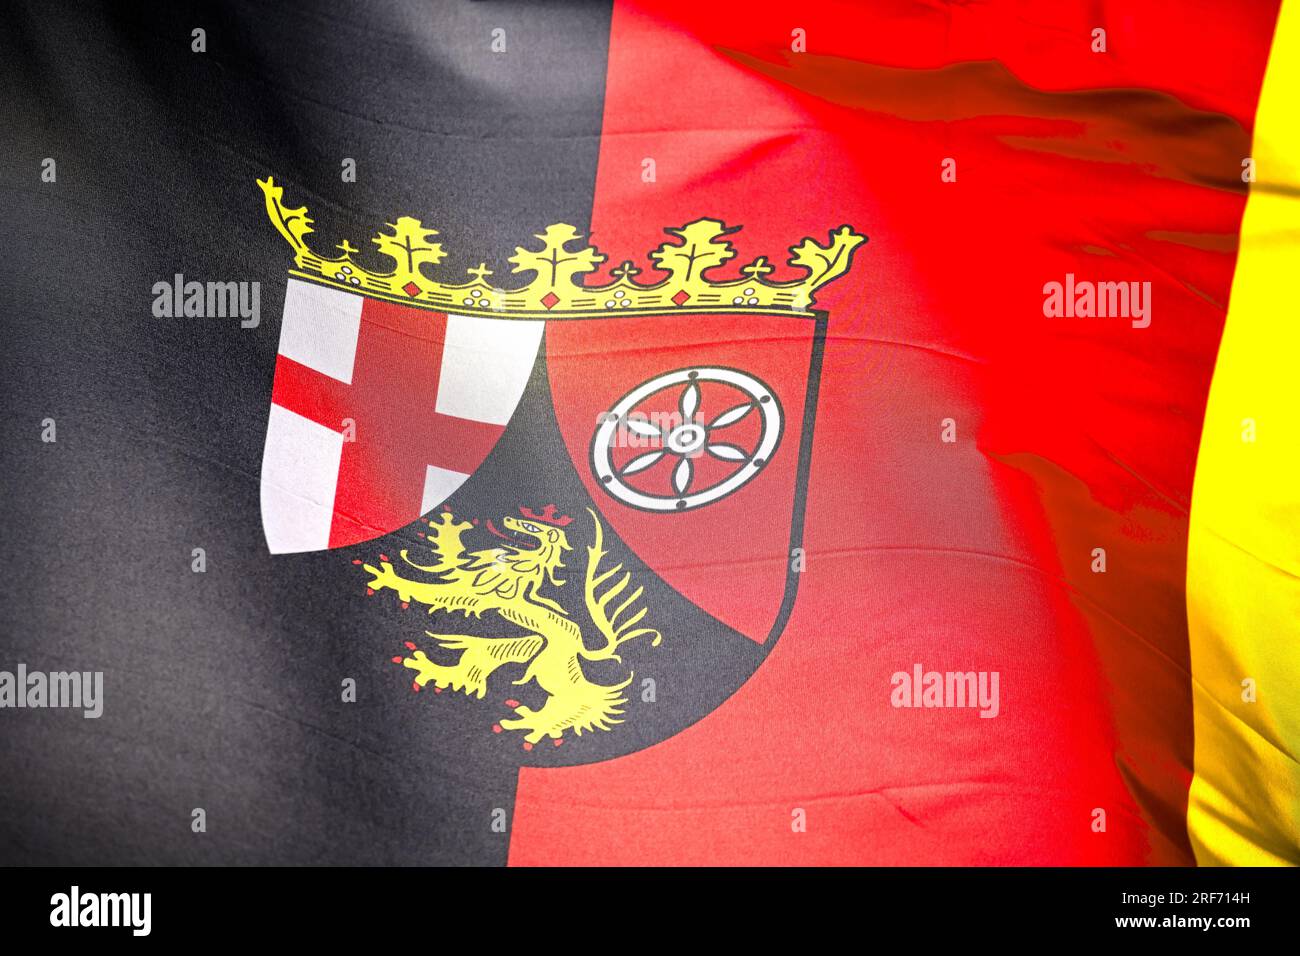 Wehende Fahne des deutschen Bundeslandes Rheinland-Pfalz Foto Stock